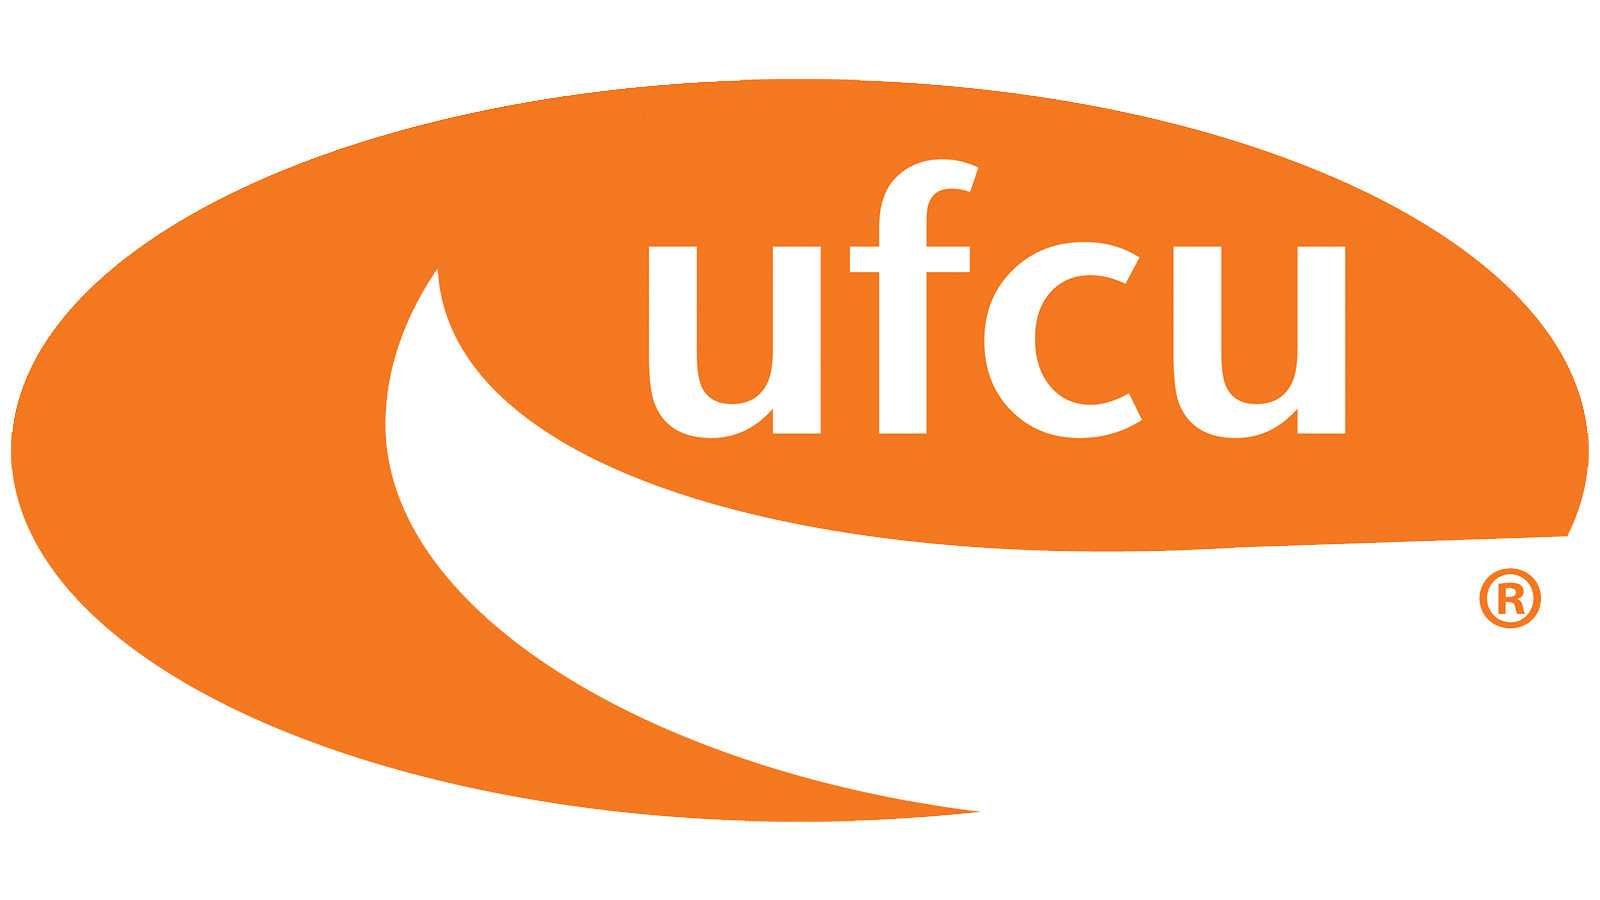 UFCU Logo